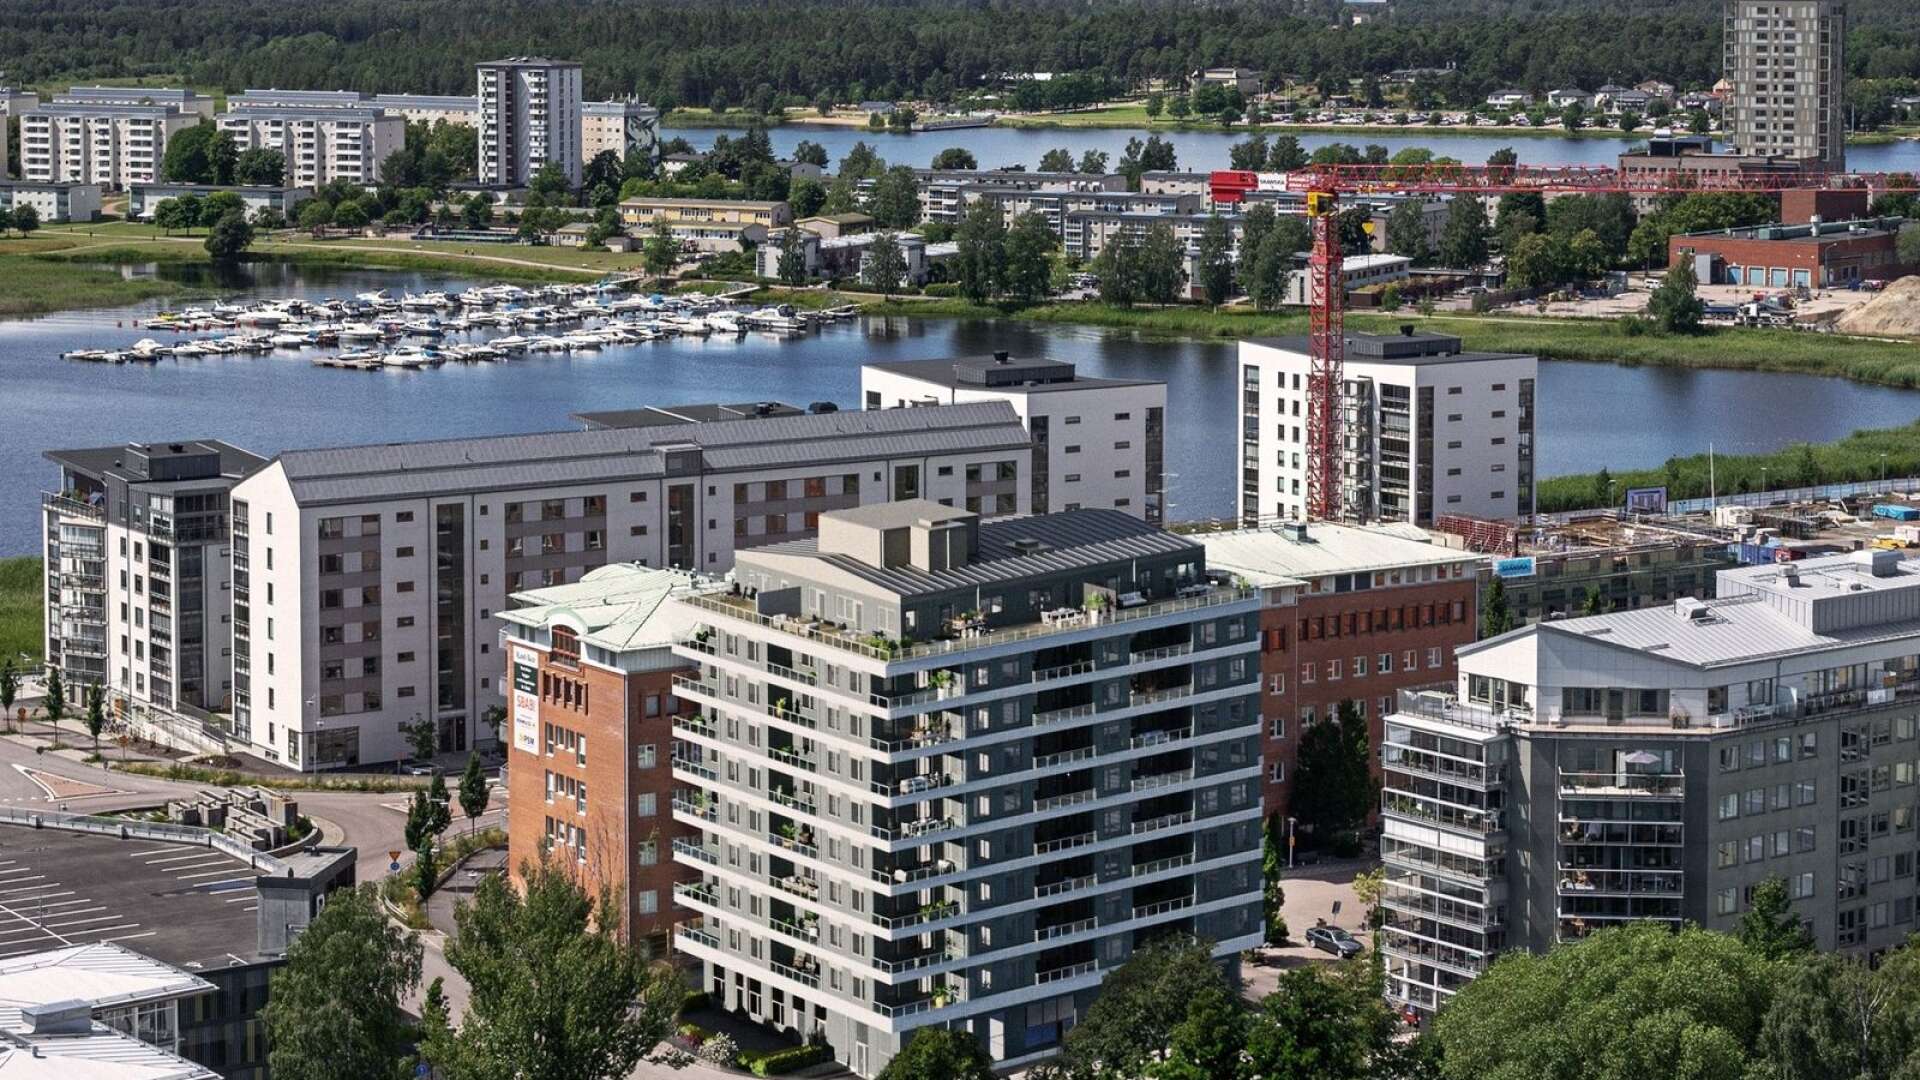 Peab ska bygga ett nytt tiovåningshus med 62 lägenheter på tomten bakom det så kallade Tieto-huset på Kanikenäset i Karlstad. Så här kommer det att se ut. Byggstart blir det till våren. 